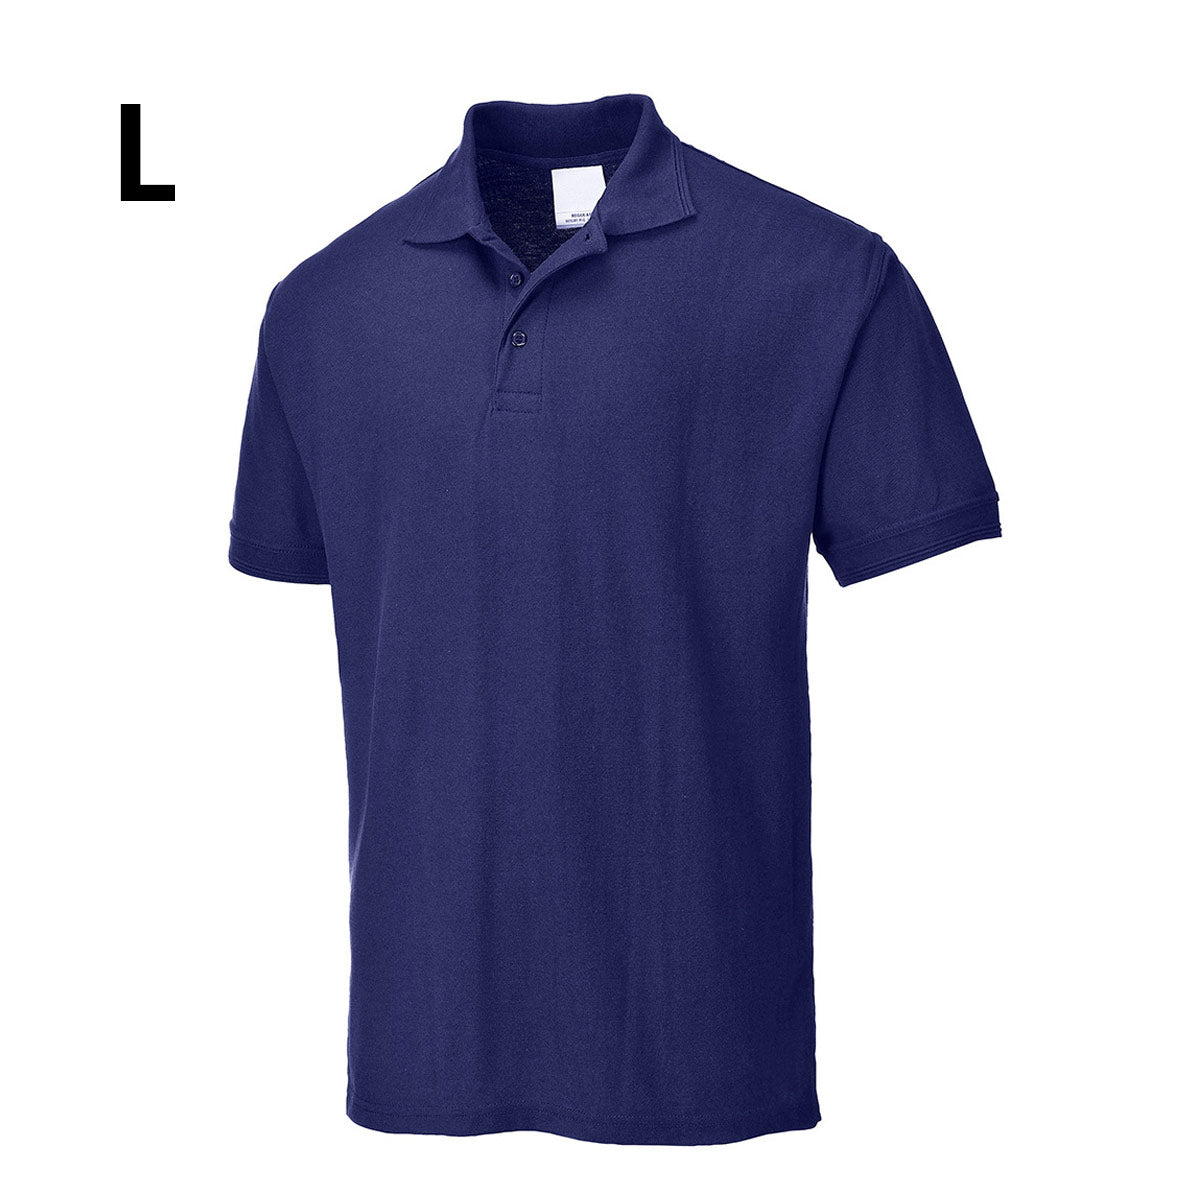 Polo shirt til mænd - Navy - Størrelse: L